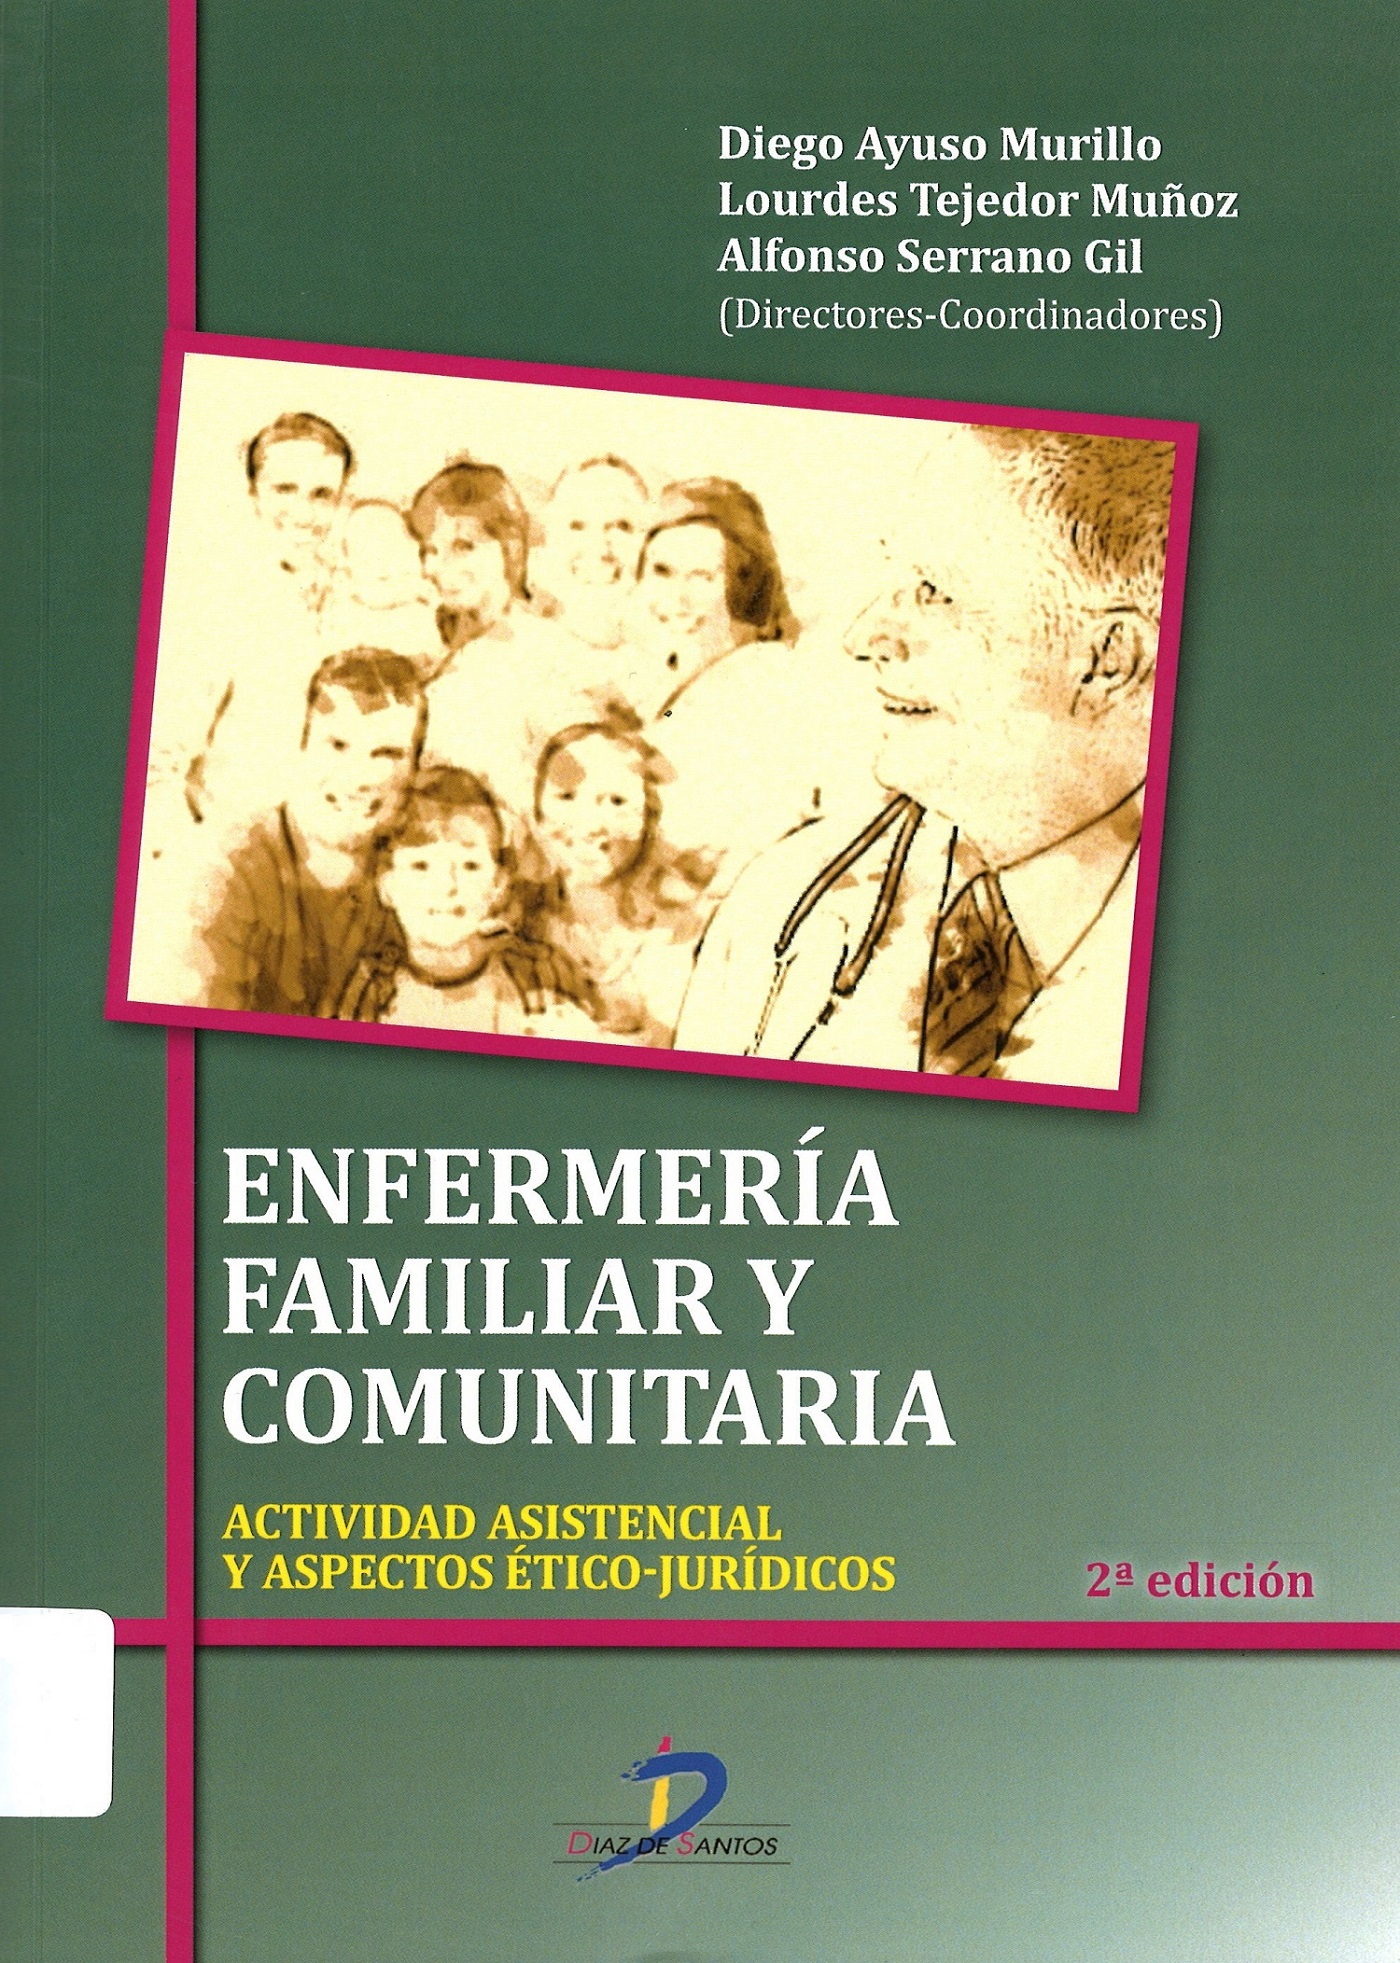 Imagen de portada del libro Enfermería familiar y comunitaria